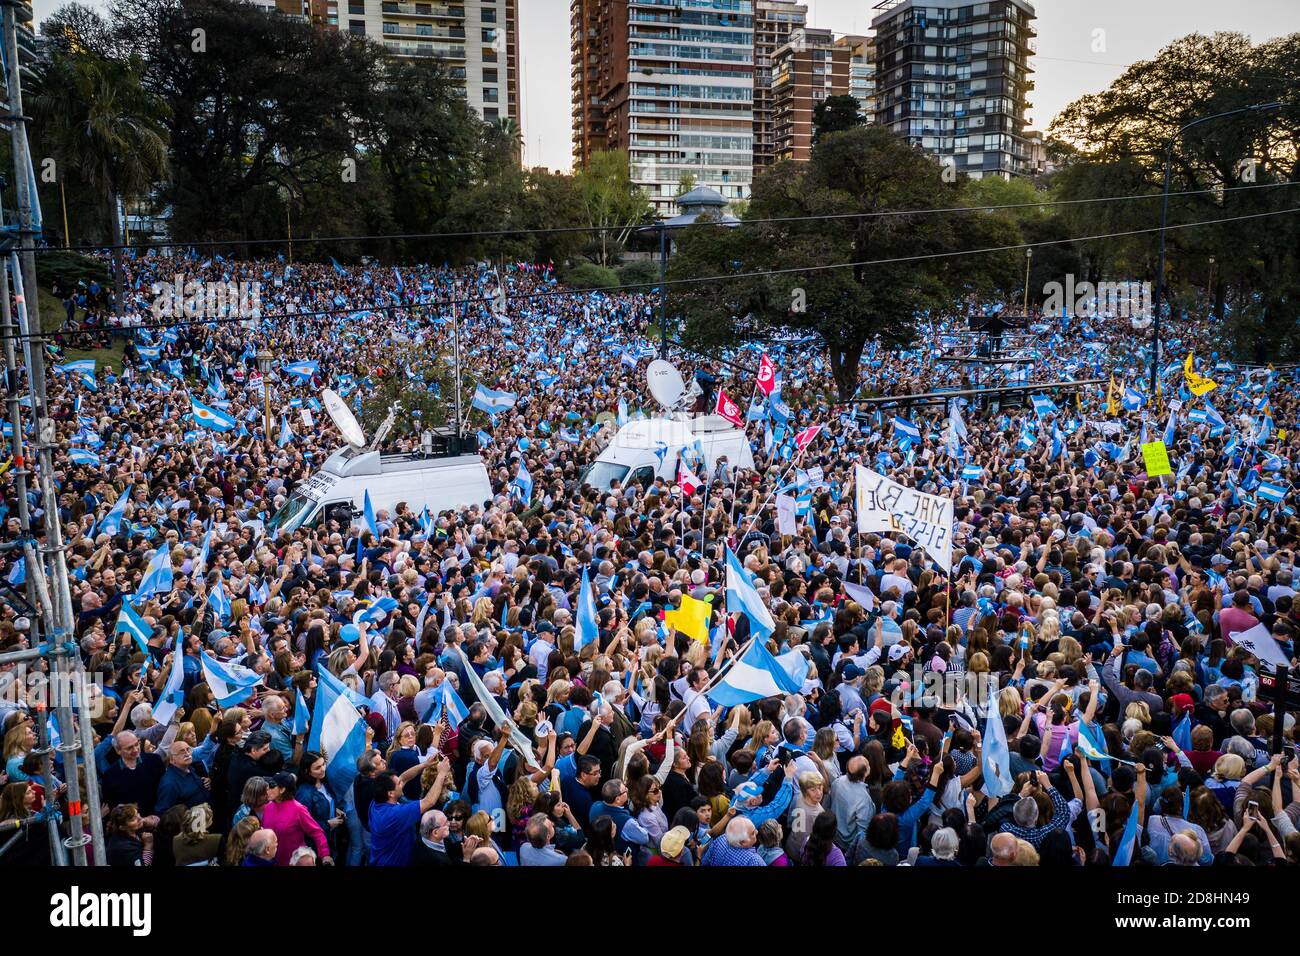 CIUDAD AUTONOMA DE BUENOS AIRES, ARGENTINIEN - 28. Sep 2019: Buenos Aires, Argentinien - 09/27/2019 Mauricio Macri hat seine Kampagne mit einer Veranstaltung i neu gestartet Stockfoto